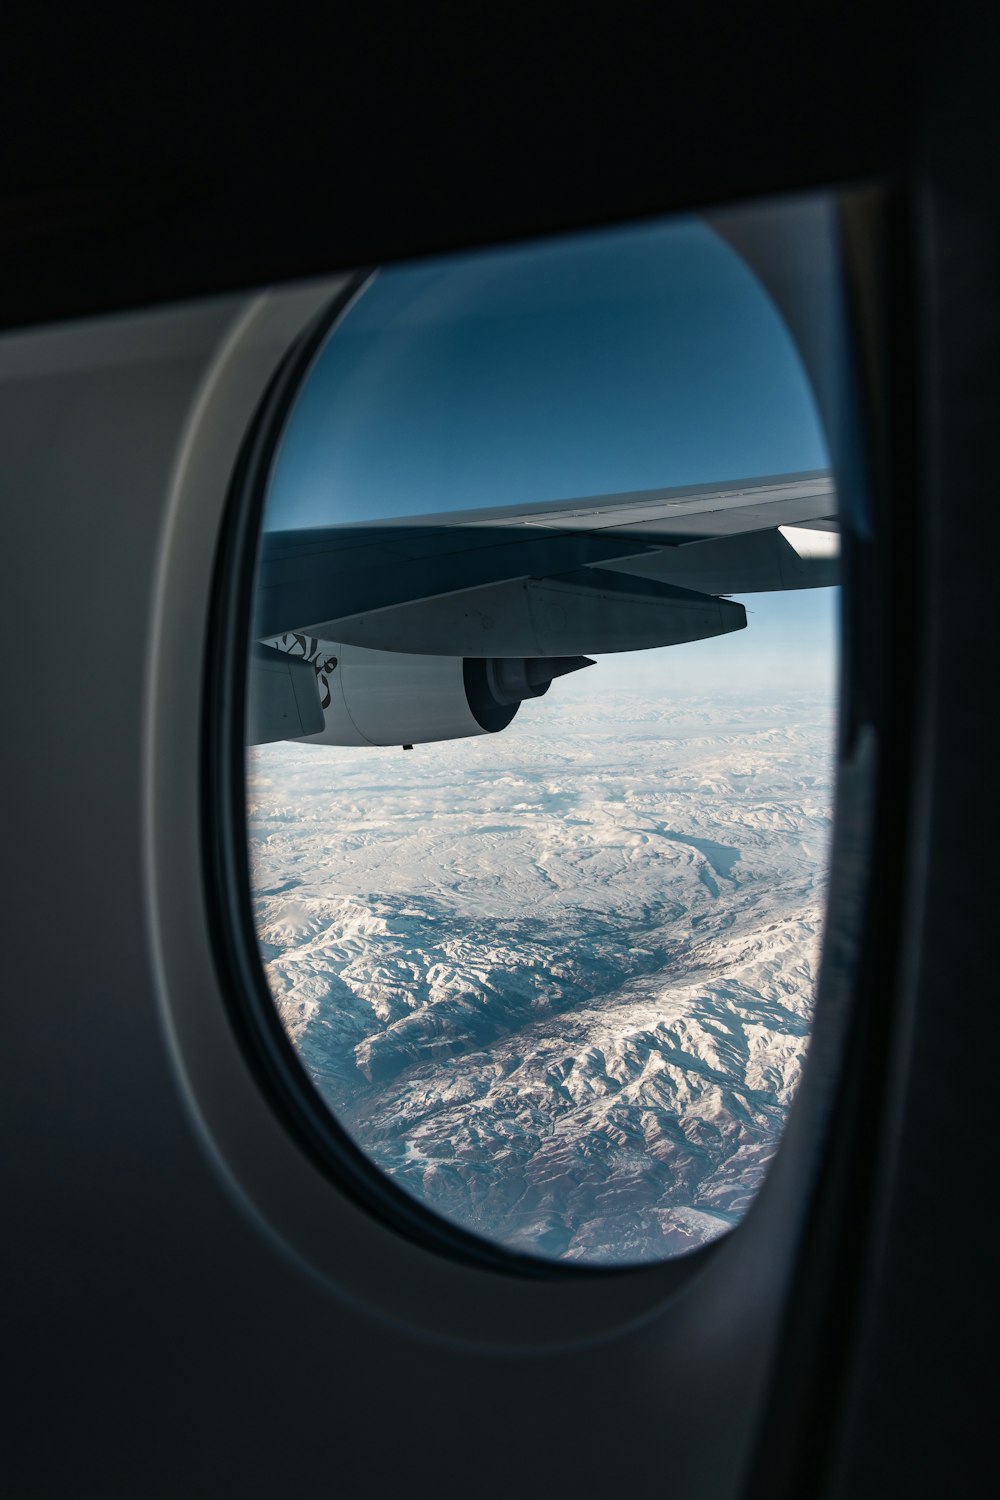 vista da janela do avião das montanhas durante o dia